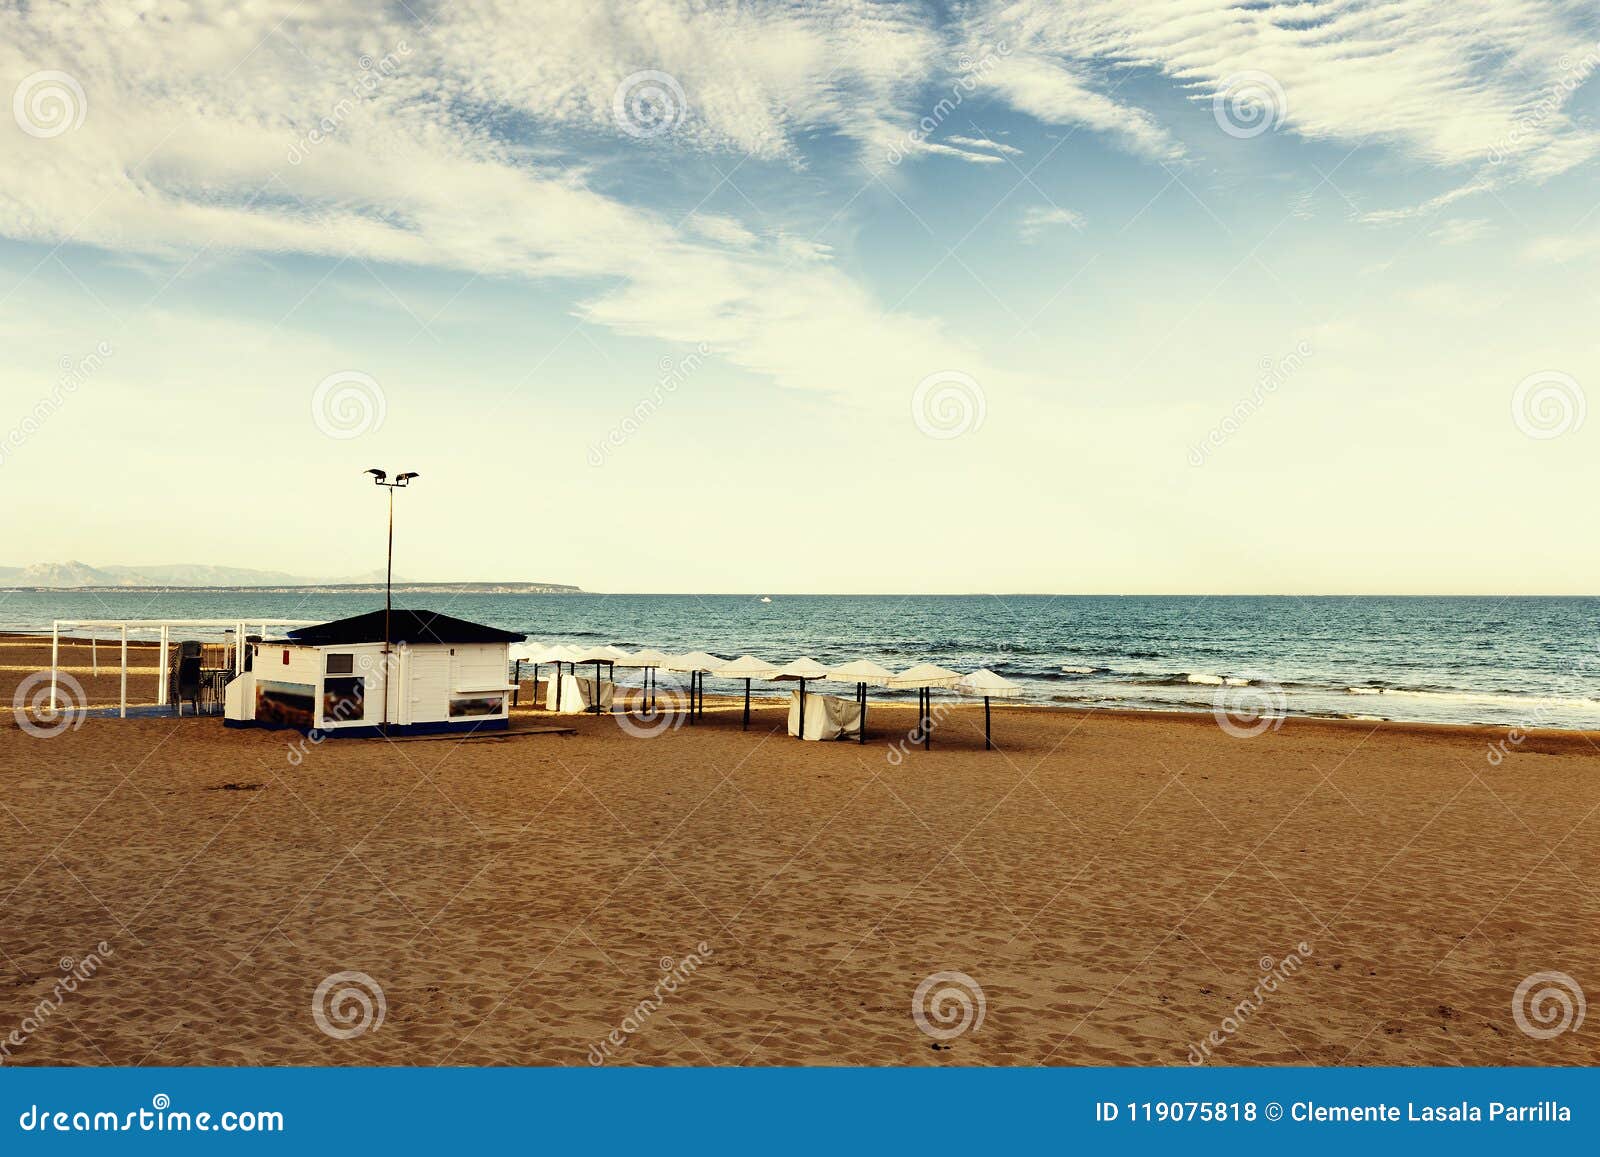 beach with tipycal spanish chiringuito